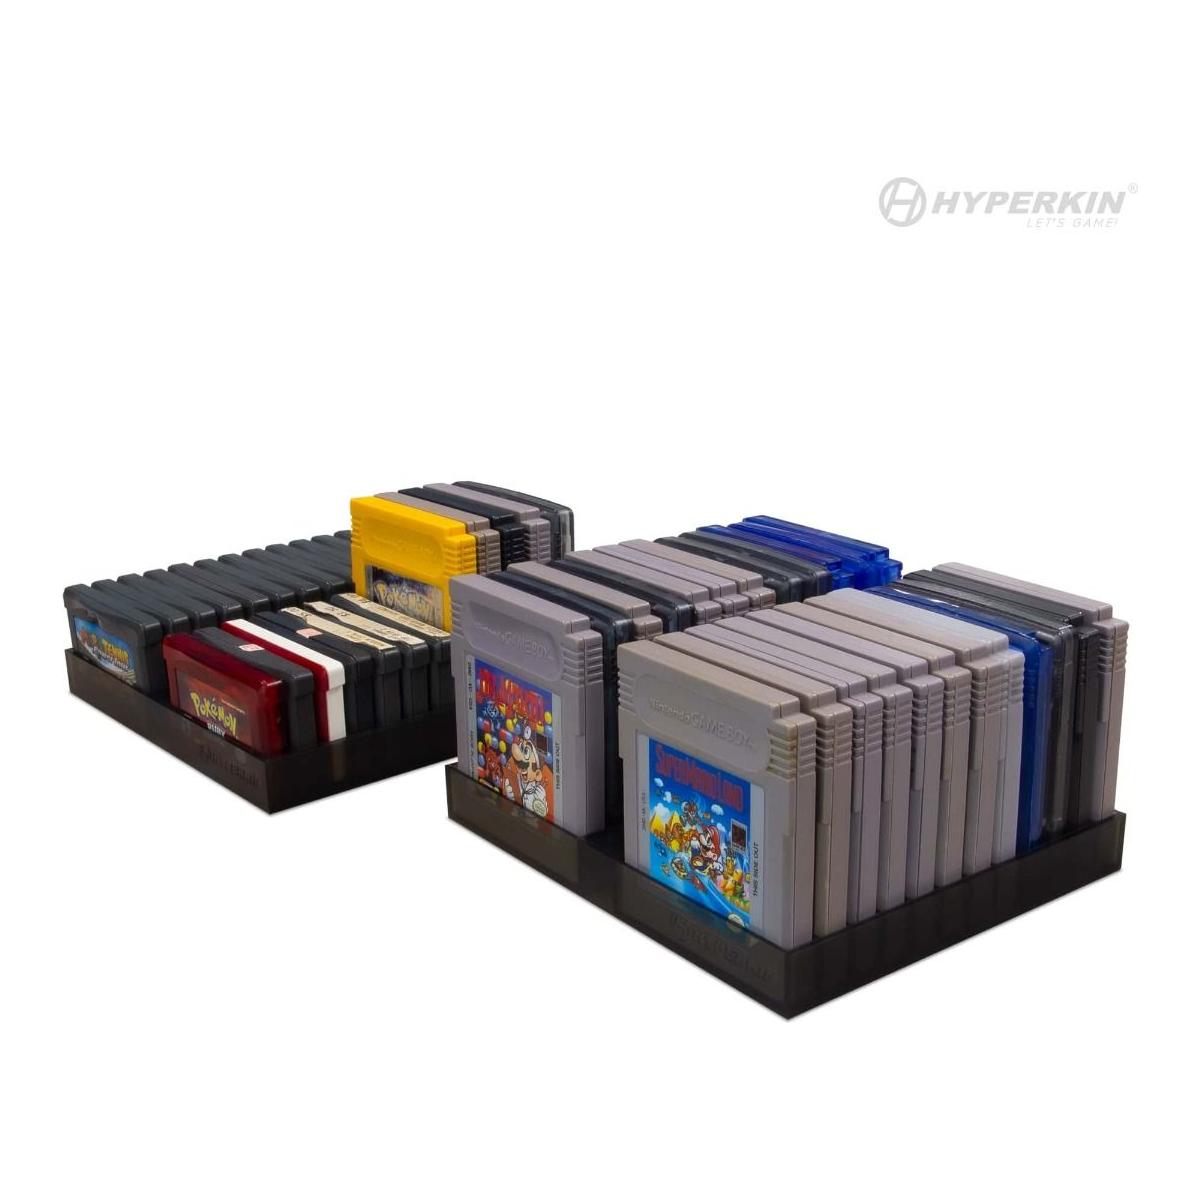 Support de rangement pour 24 cartouches Game Boy/Color/Advance (paquet de 2)